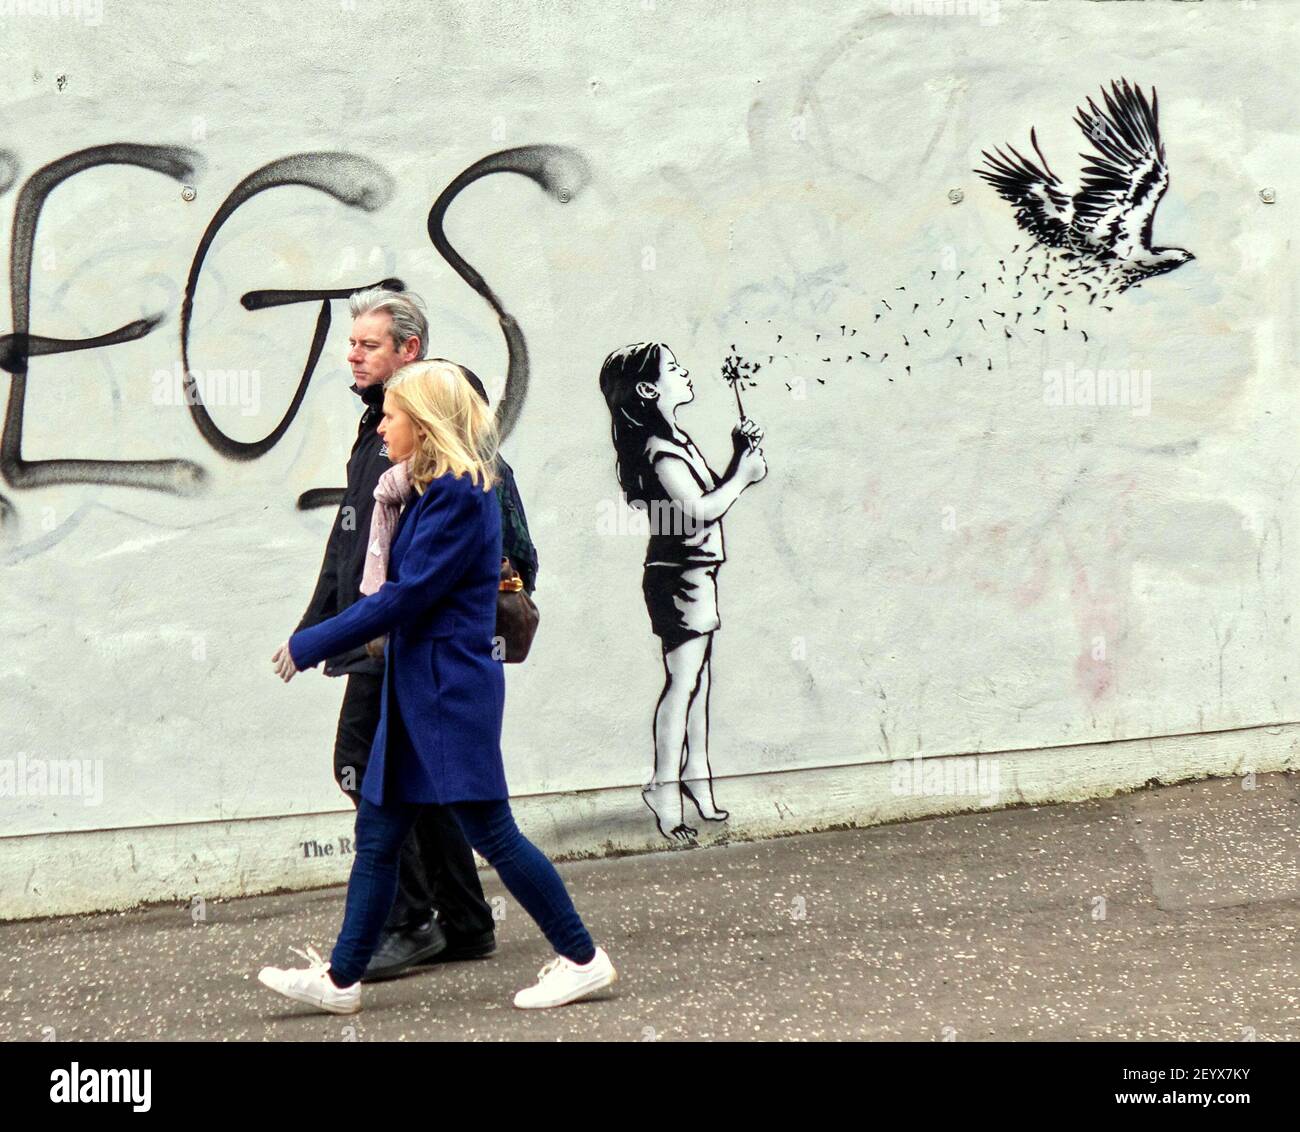 Glasgow, Schottland, UK,6th. März 2021, Lockdown am Samstag wurde die Dystopie als leeres Stadtzentrum zu einem Hafen für Graffiti und Vandalismus, da mehr Menschen allein als je zuvor gingen Credit Gerard Ferry/Alamy Live News Stockfoto